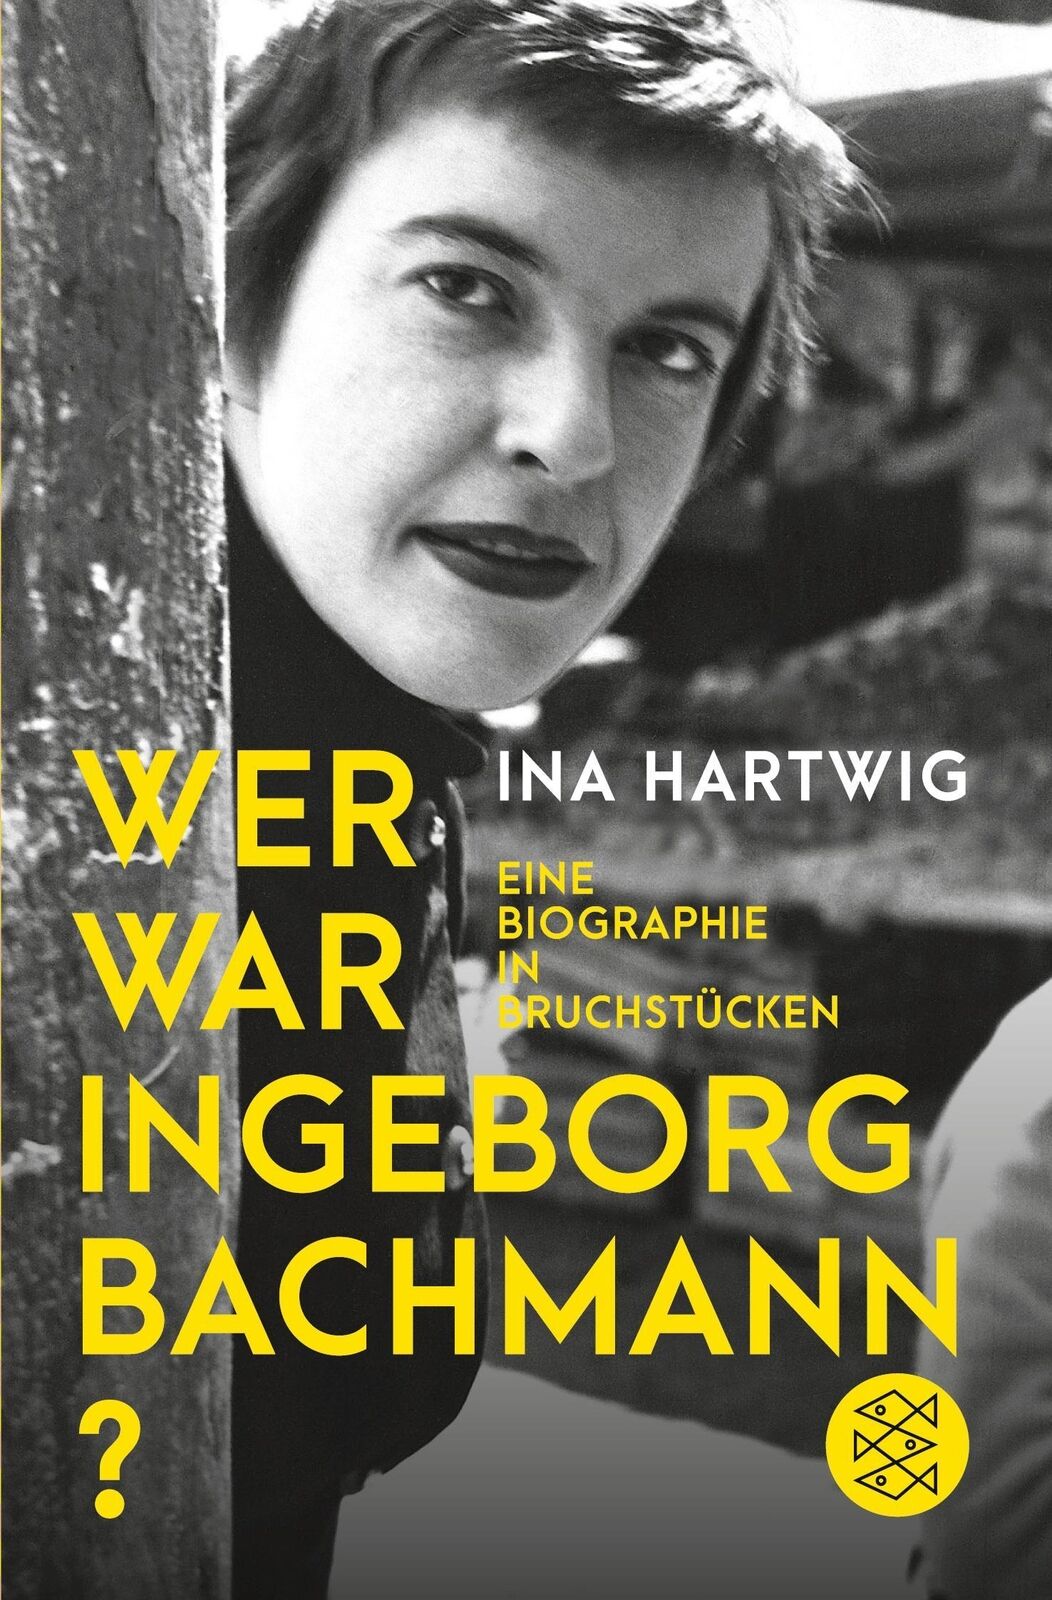 Ina Hartwig